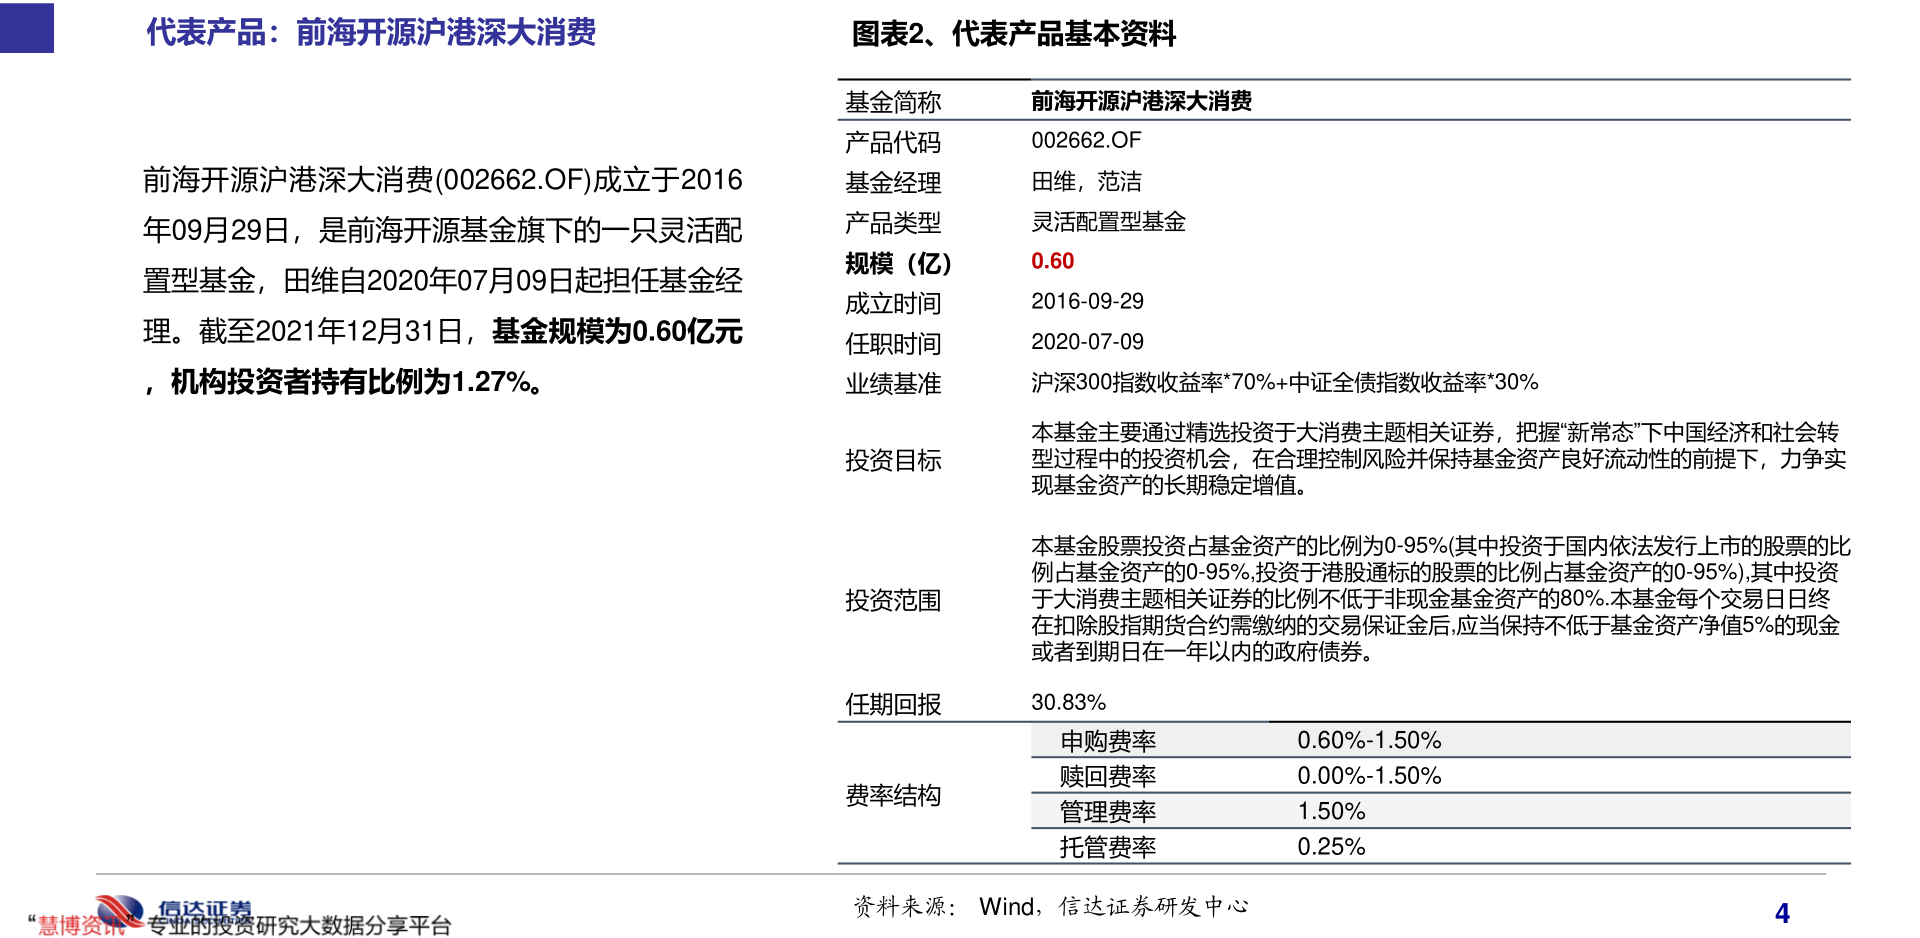 1月19日联建光电大单净流出503.11万，股票市盈率35.46